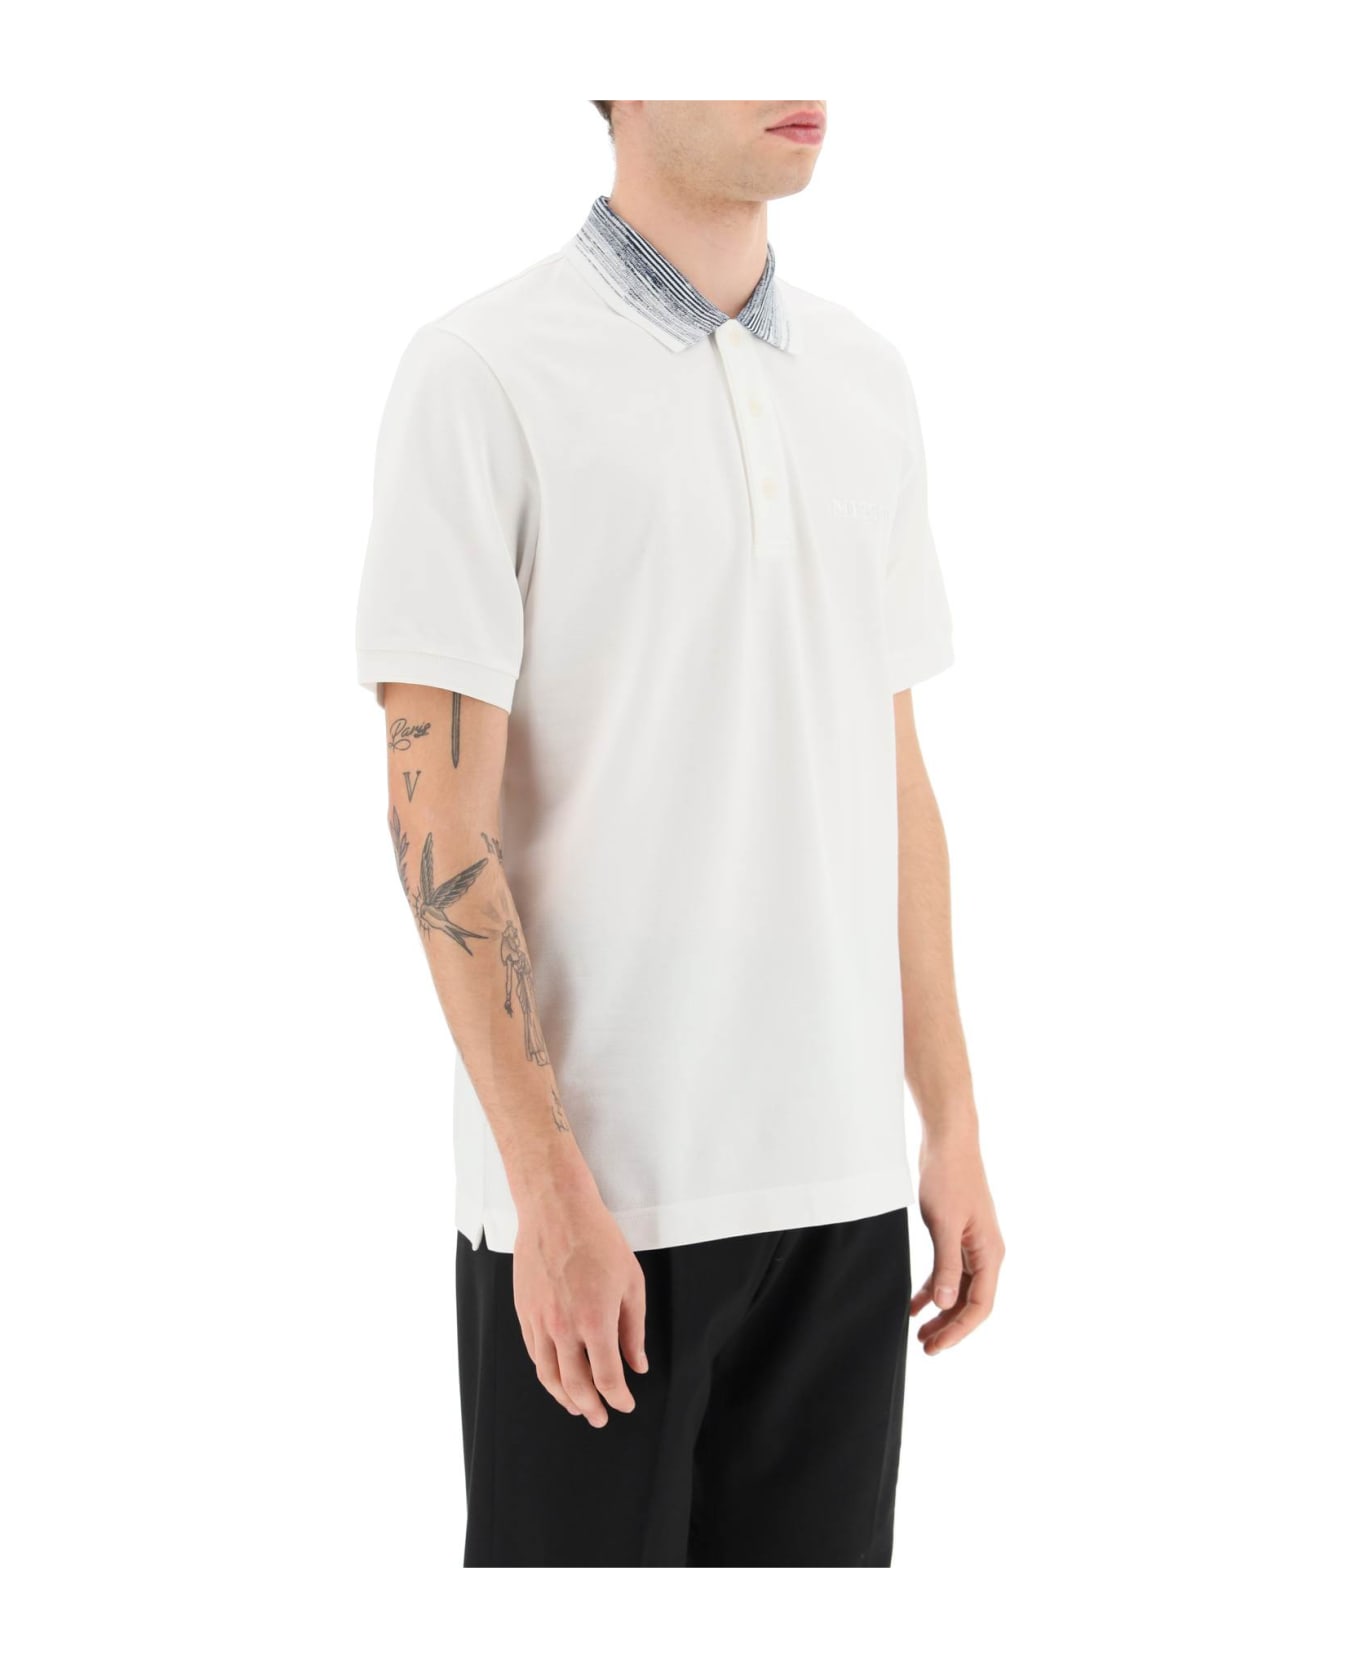 Missoni White Cotton Polo Shirt - WHITE NAVY WHITE (White)